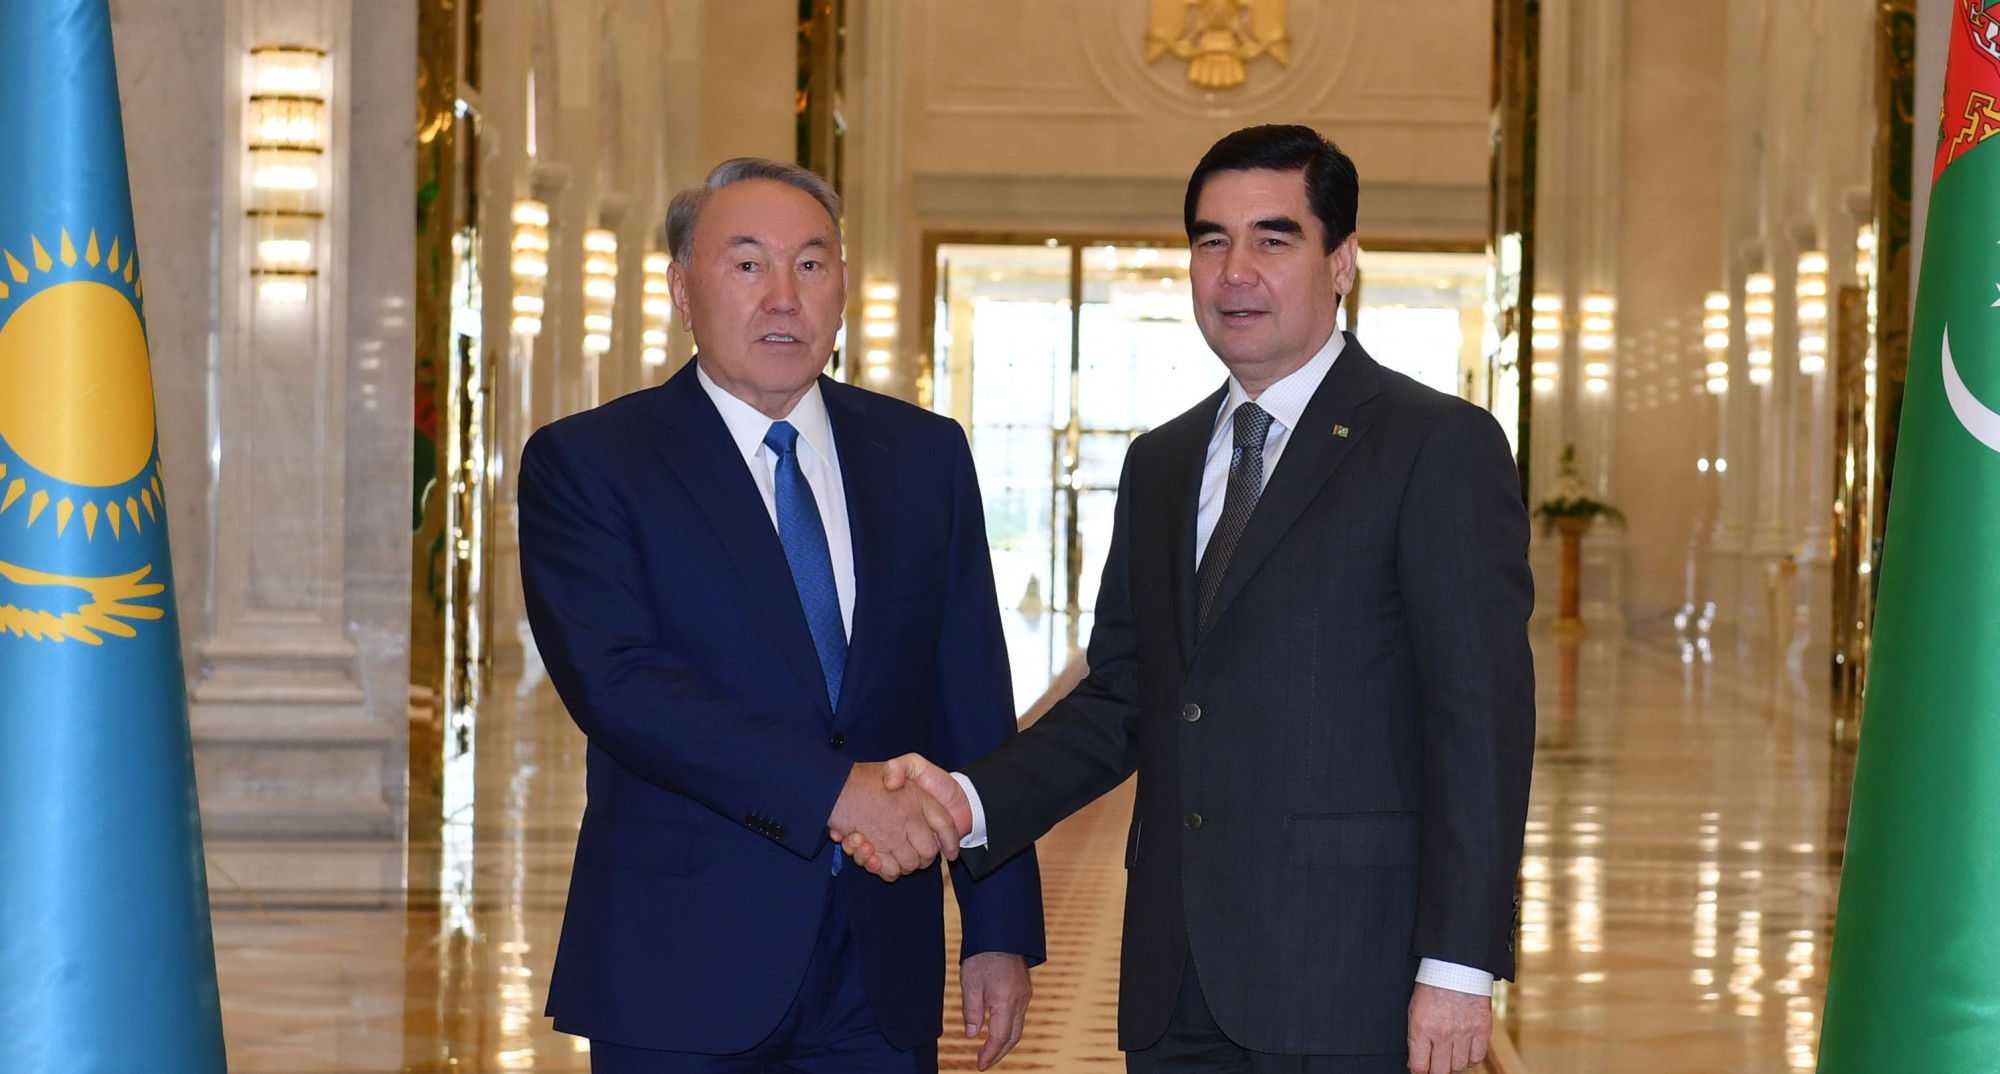 Nursultan Nazarbayev arrived in Ashgabat for a working visit